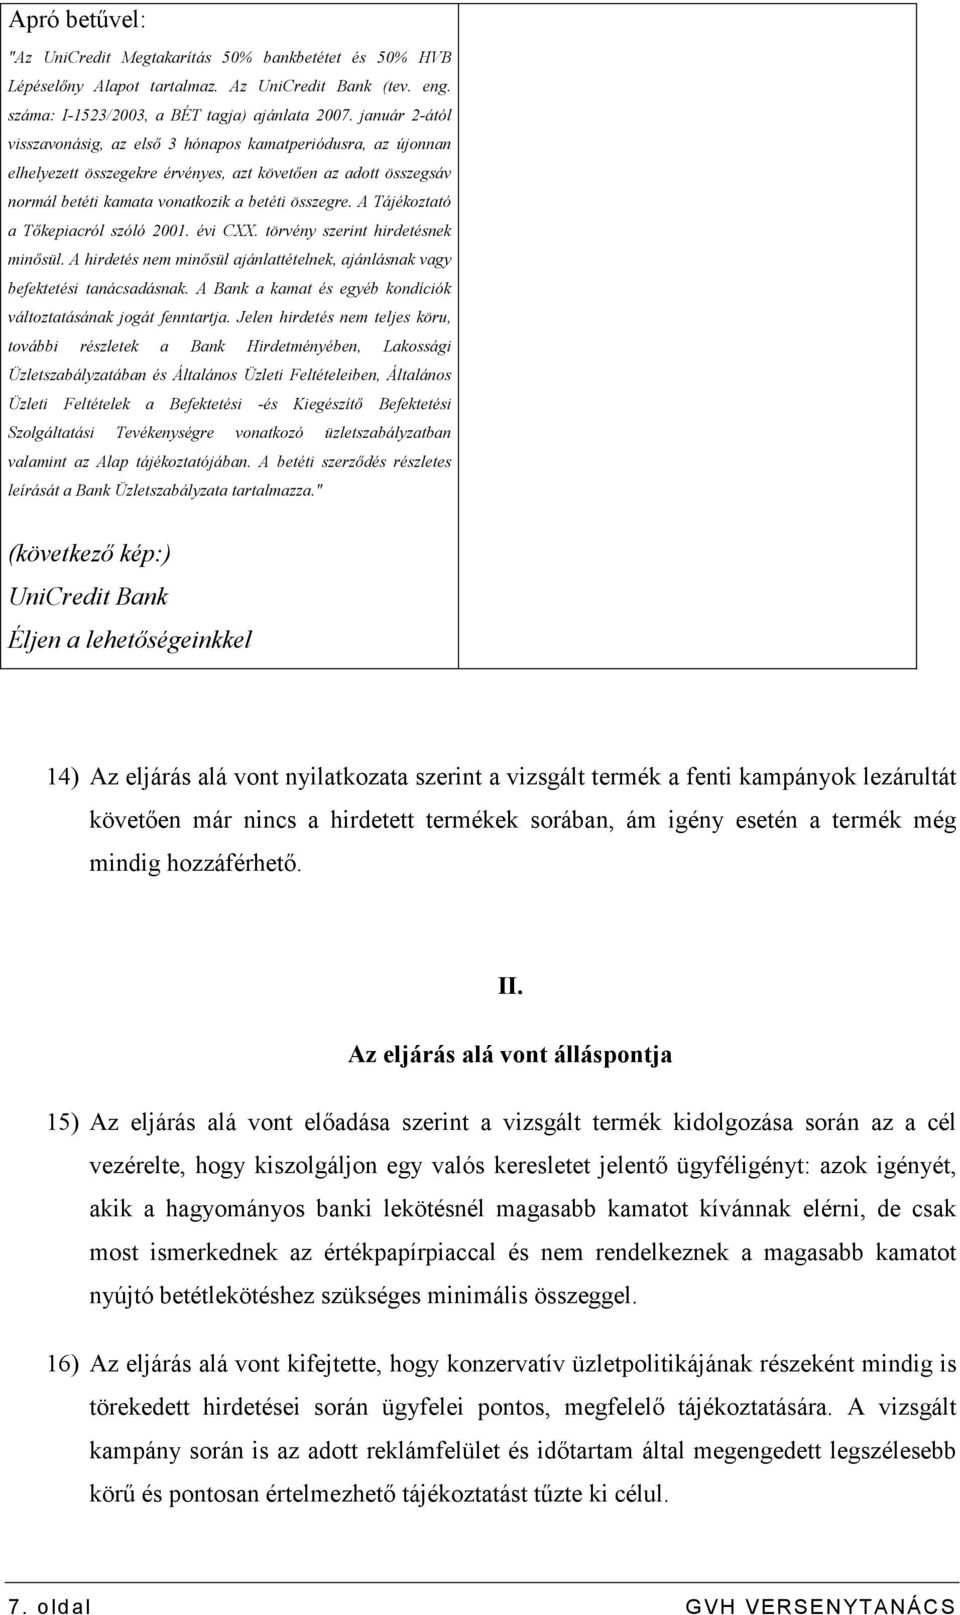 A Tájékoztató a Tıkepiacról szóló 2001. évi CXX. törvény szerint hirdetésnek minısül. A hirdetés nem minısül ajánlattételnek, ajánlásnak vagy befektetési tanácsadásnak.